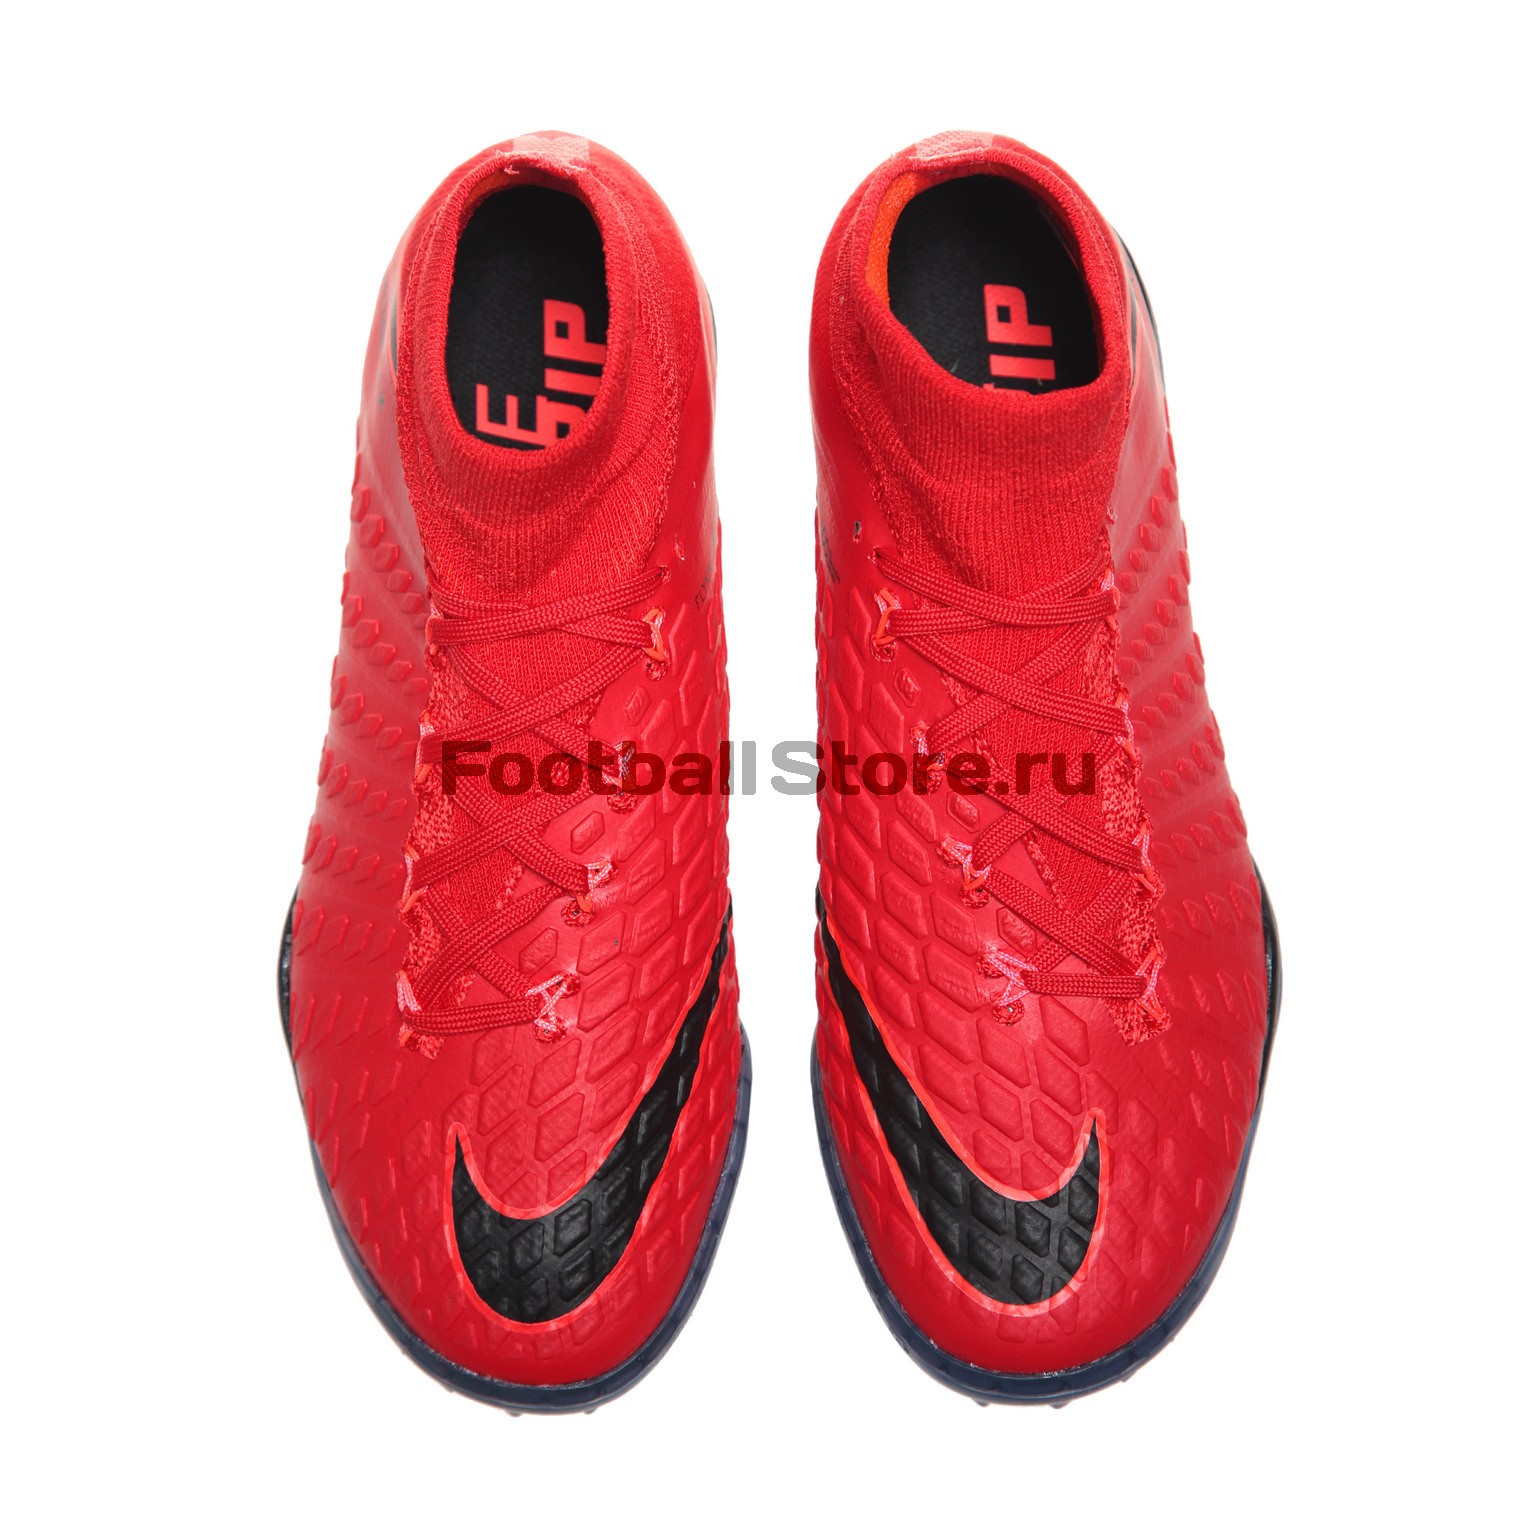 Шиповки детские Nike HypervenomX Proximo 2 DF TF 852601-616